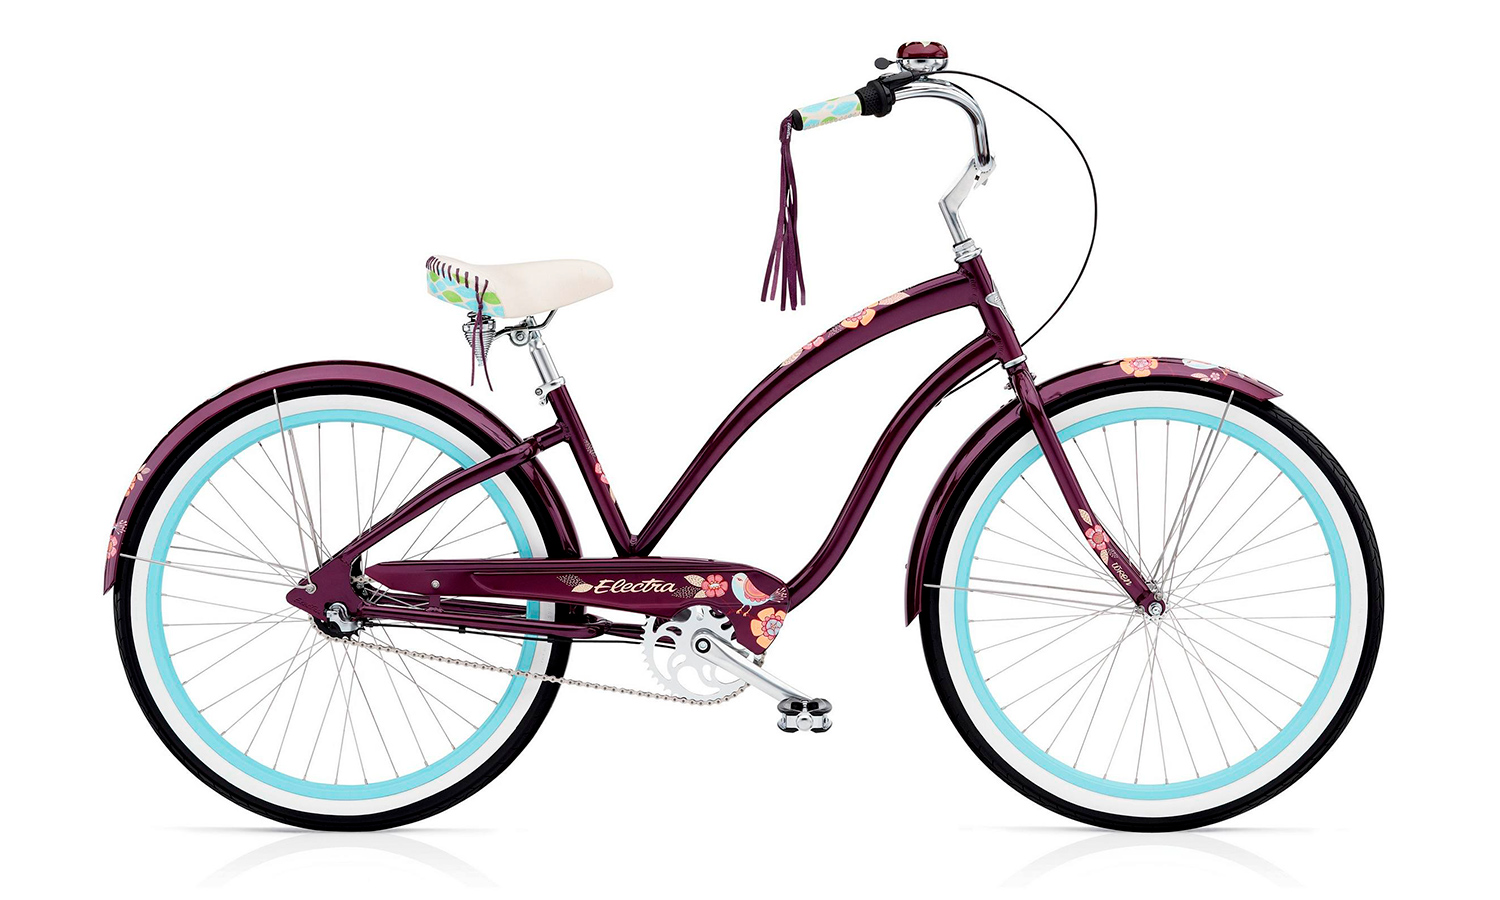 Велосипед 26" Electra Wren 3i Ladies' (2018) 2018 teal